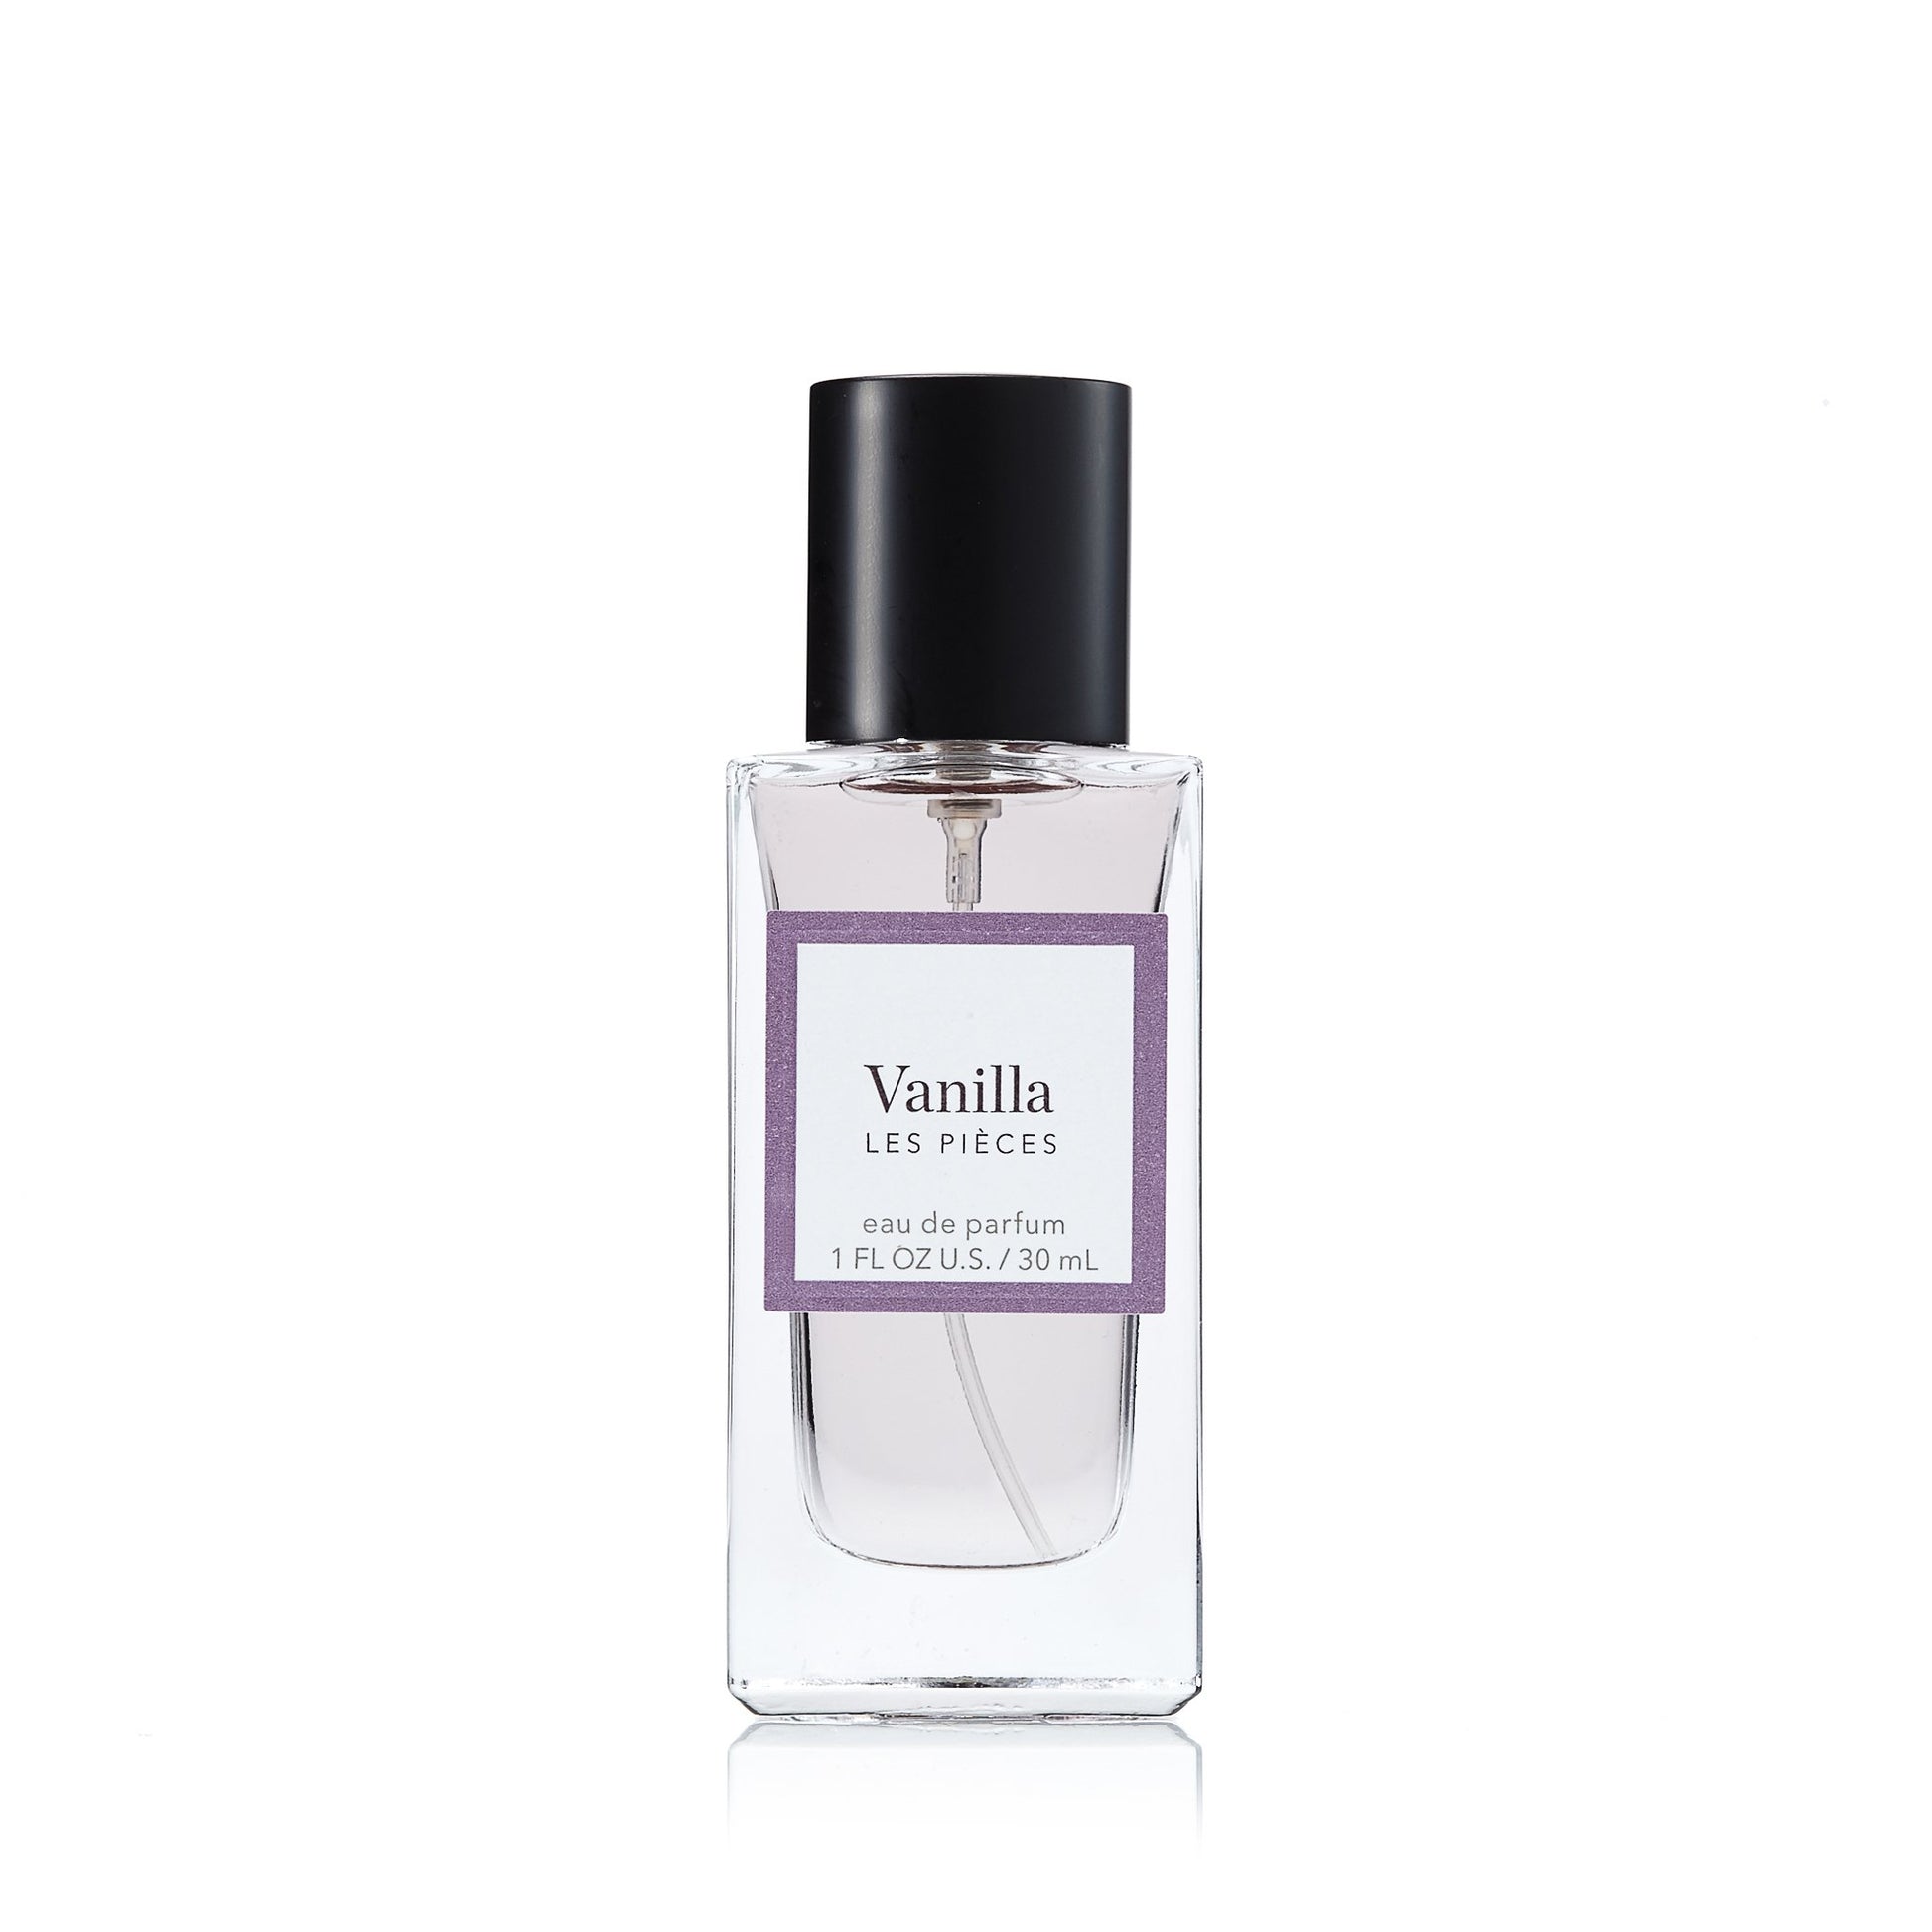 Vanilla Eau de Parfum Spray for Women by Les Pieces, Product image 1